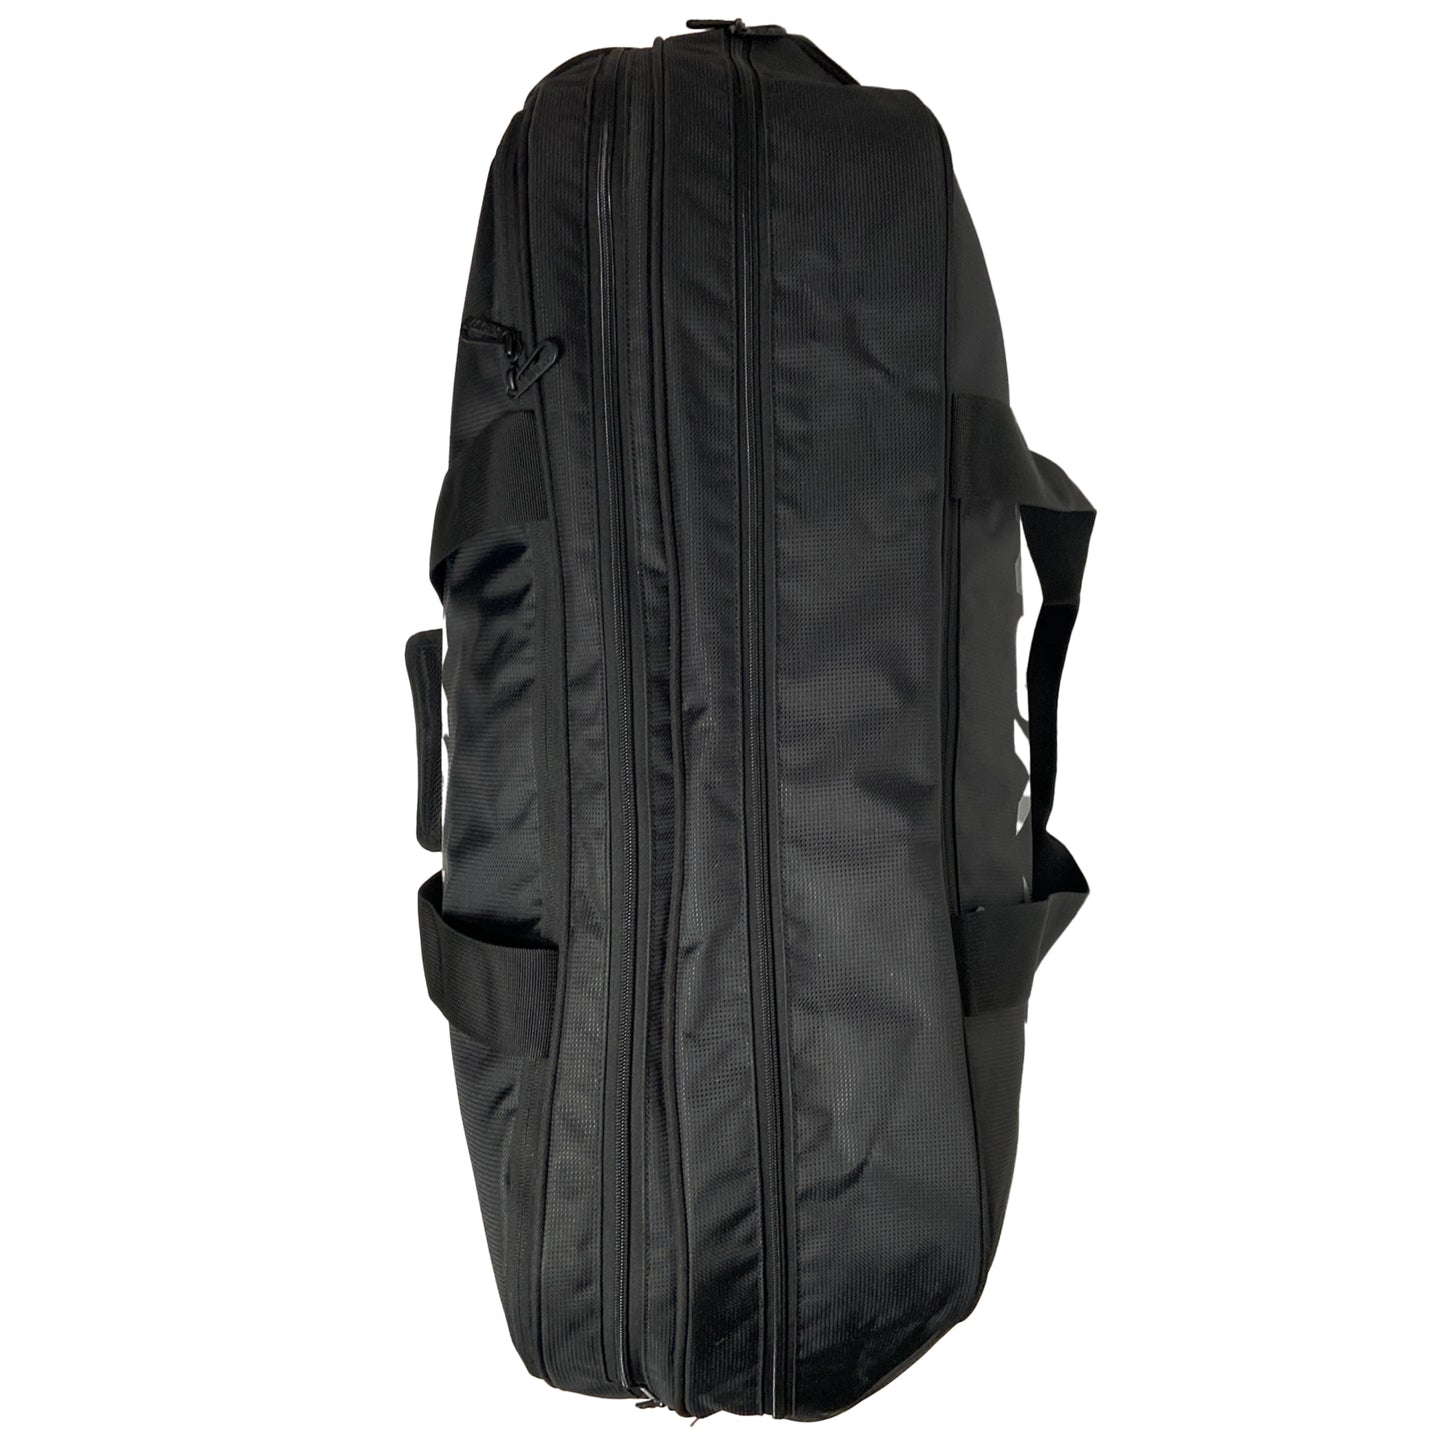 Yonex Pro Tournament Bag (BAG92431W) Black